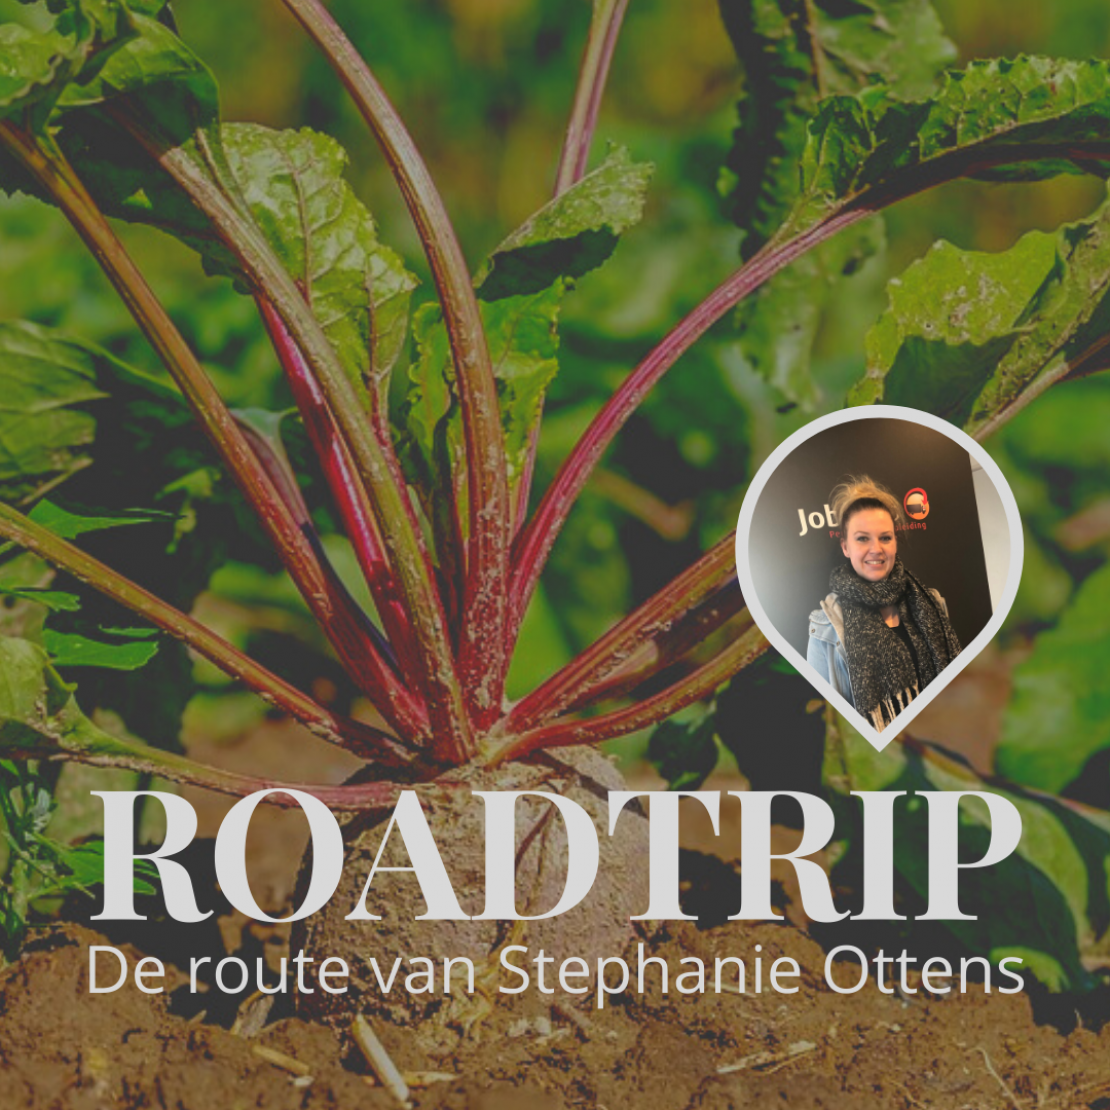 De route van Stephanie Ottens